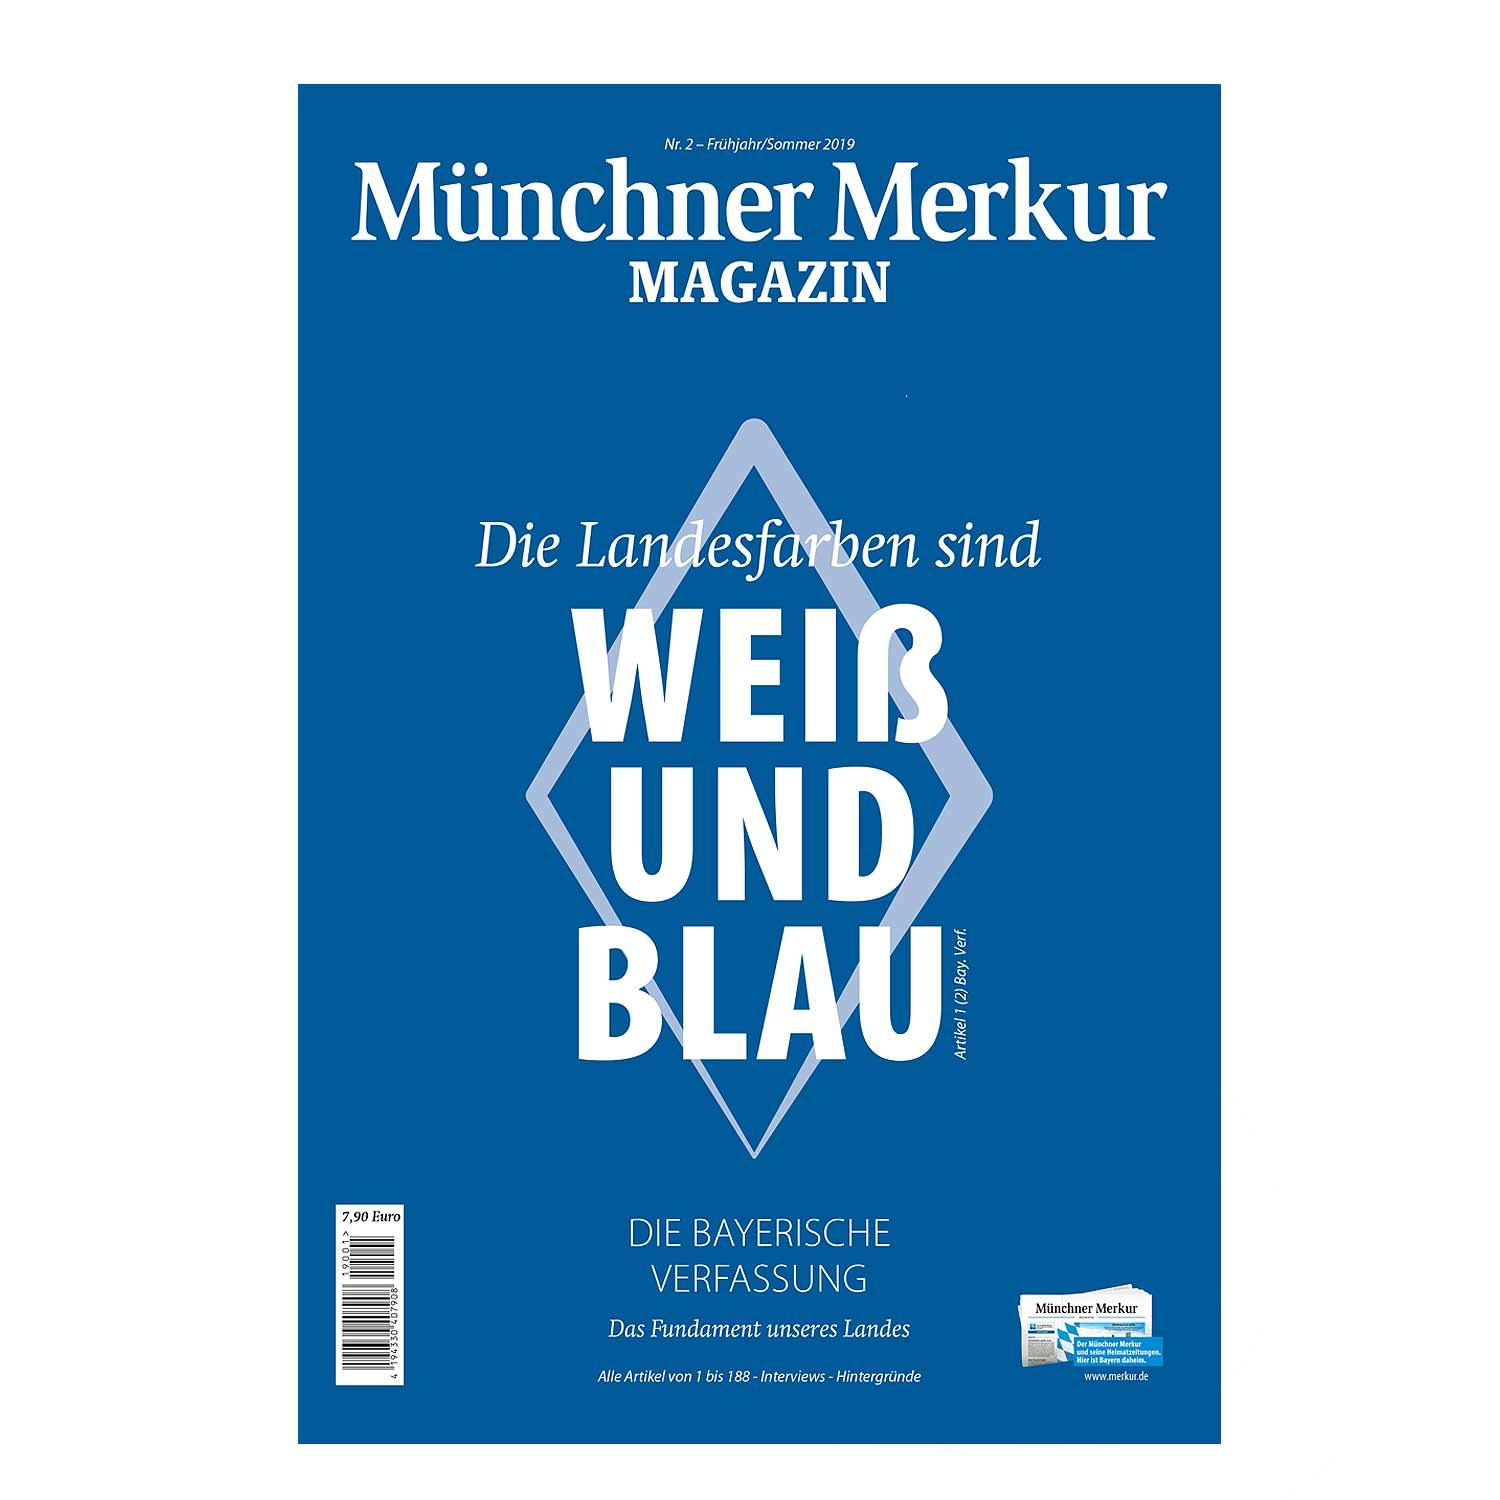 Magazin "Die Landesfarben sind WEIß UND BLAU" - bavariashop - mei LebensGfui